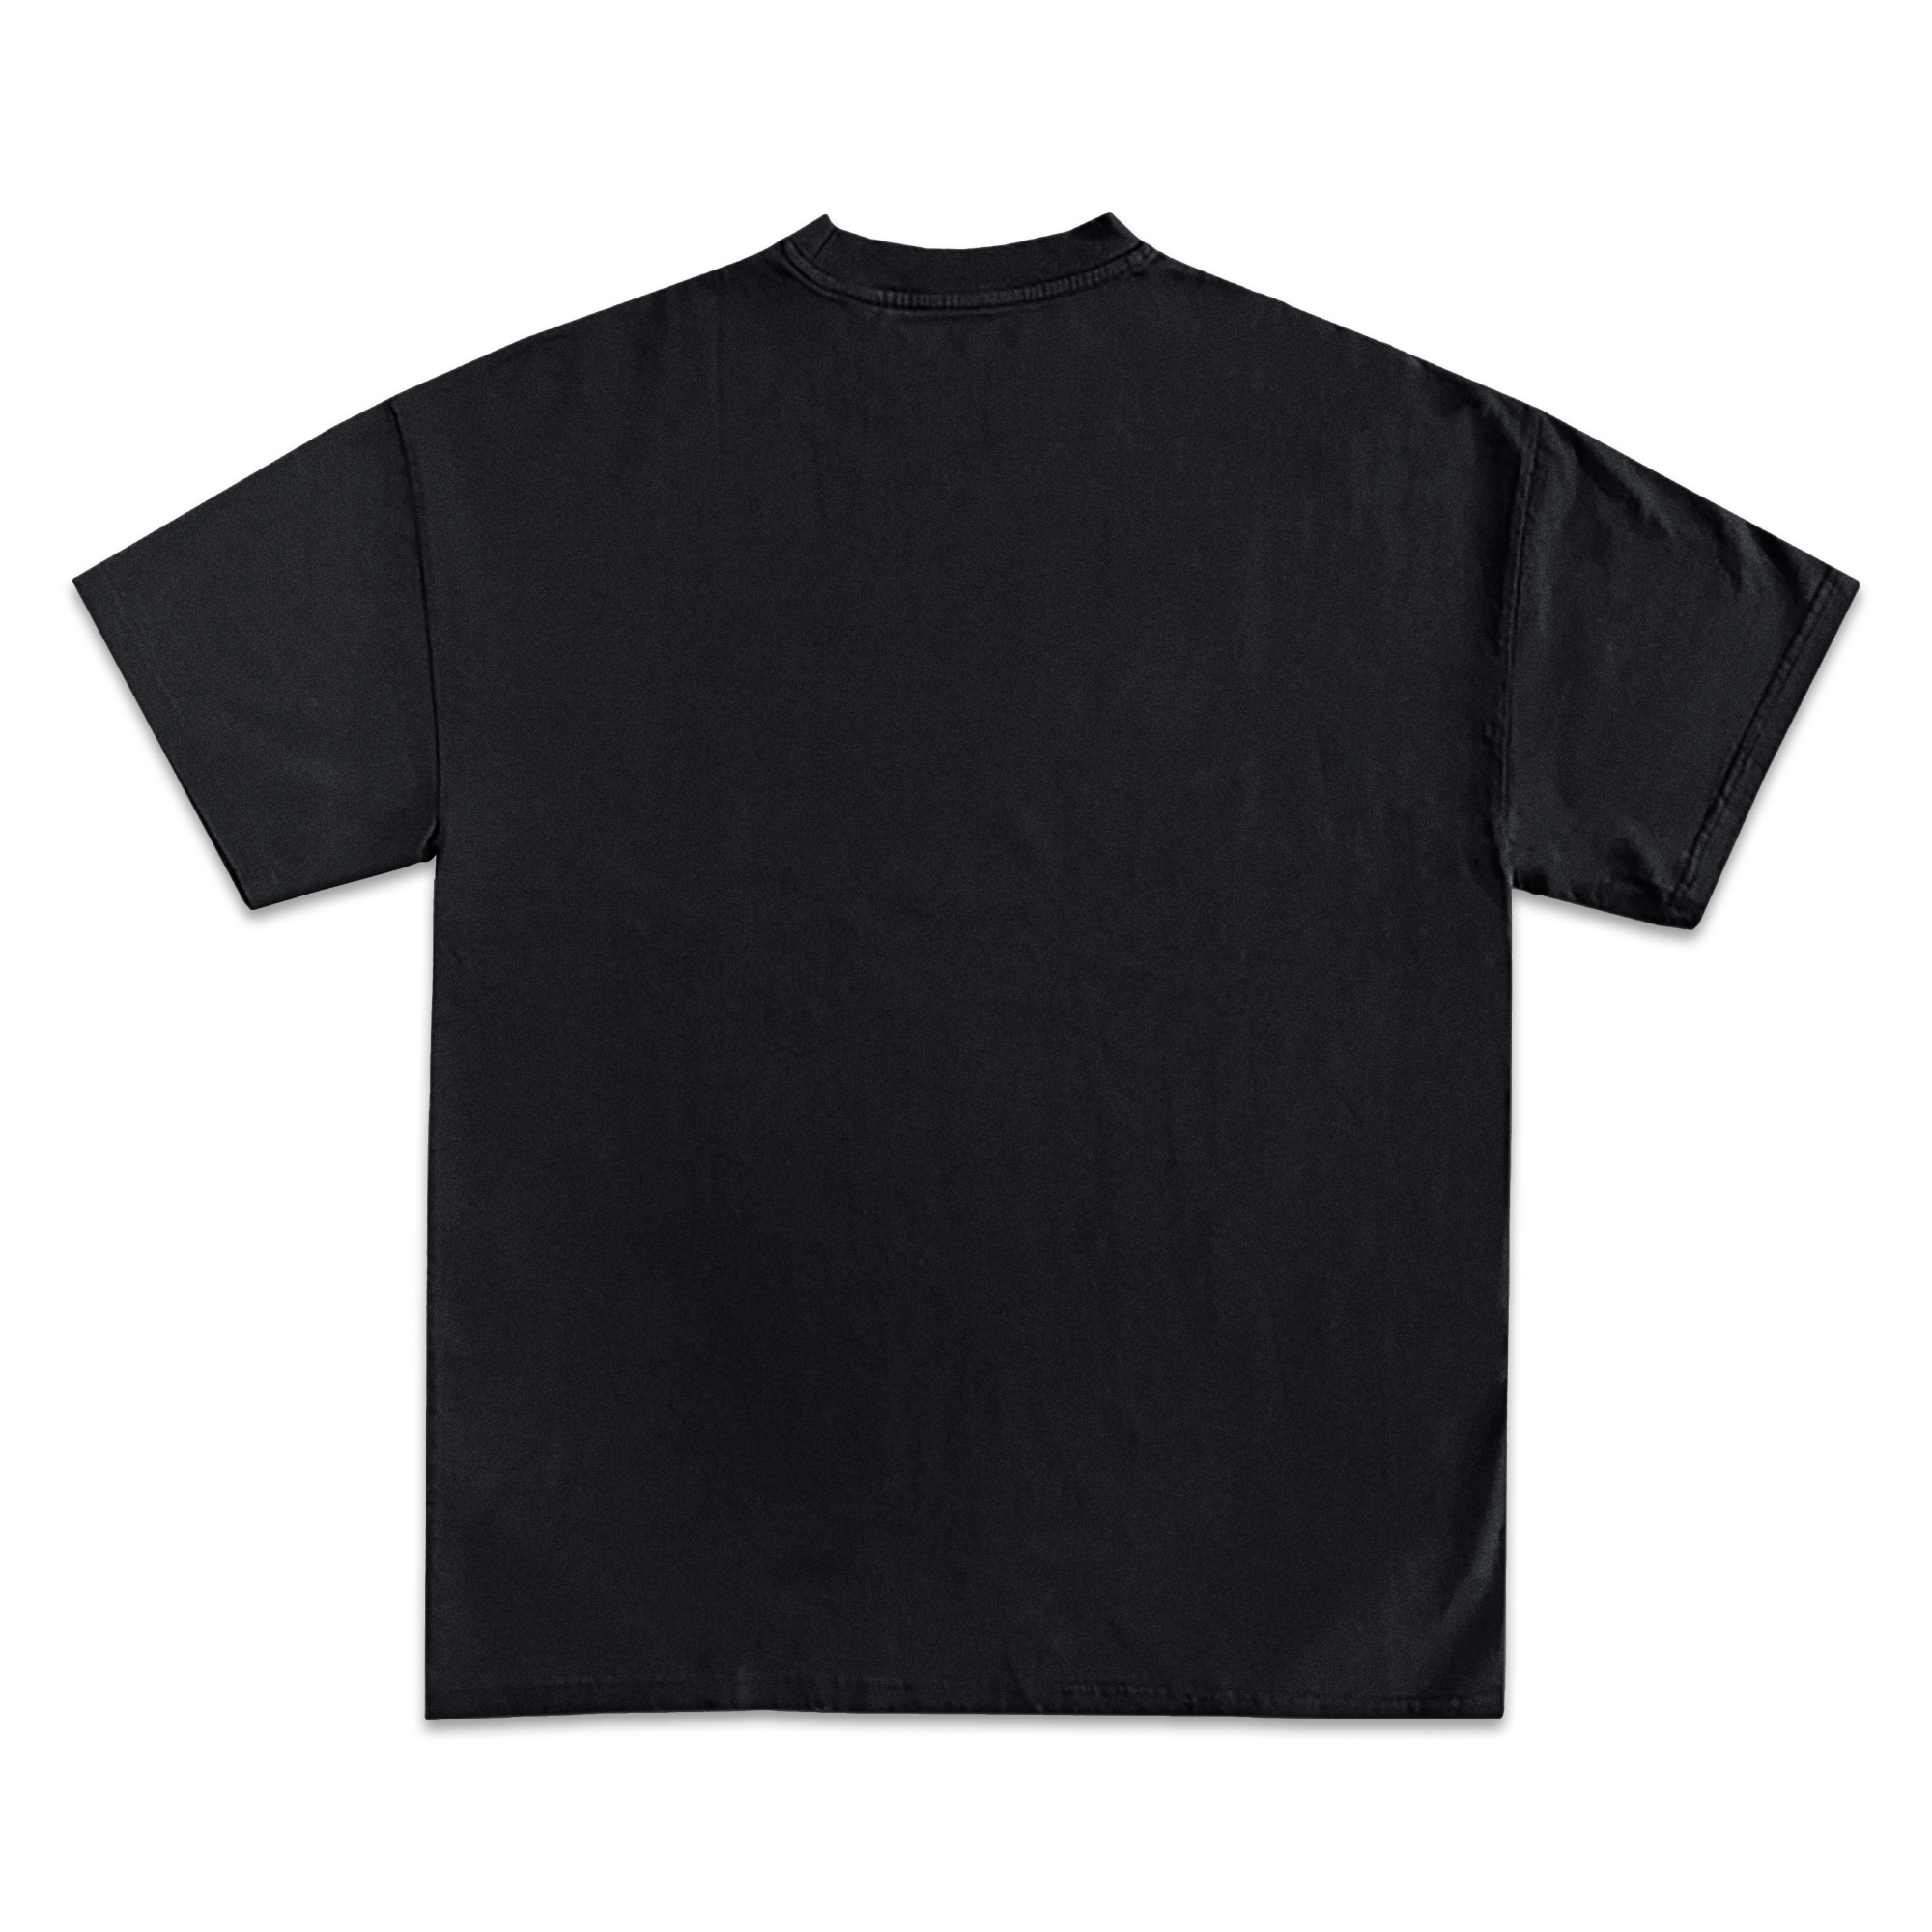 Tony Montana Scarface Jumbo Graphic T-Shirt